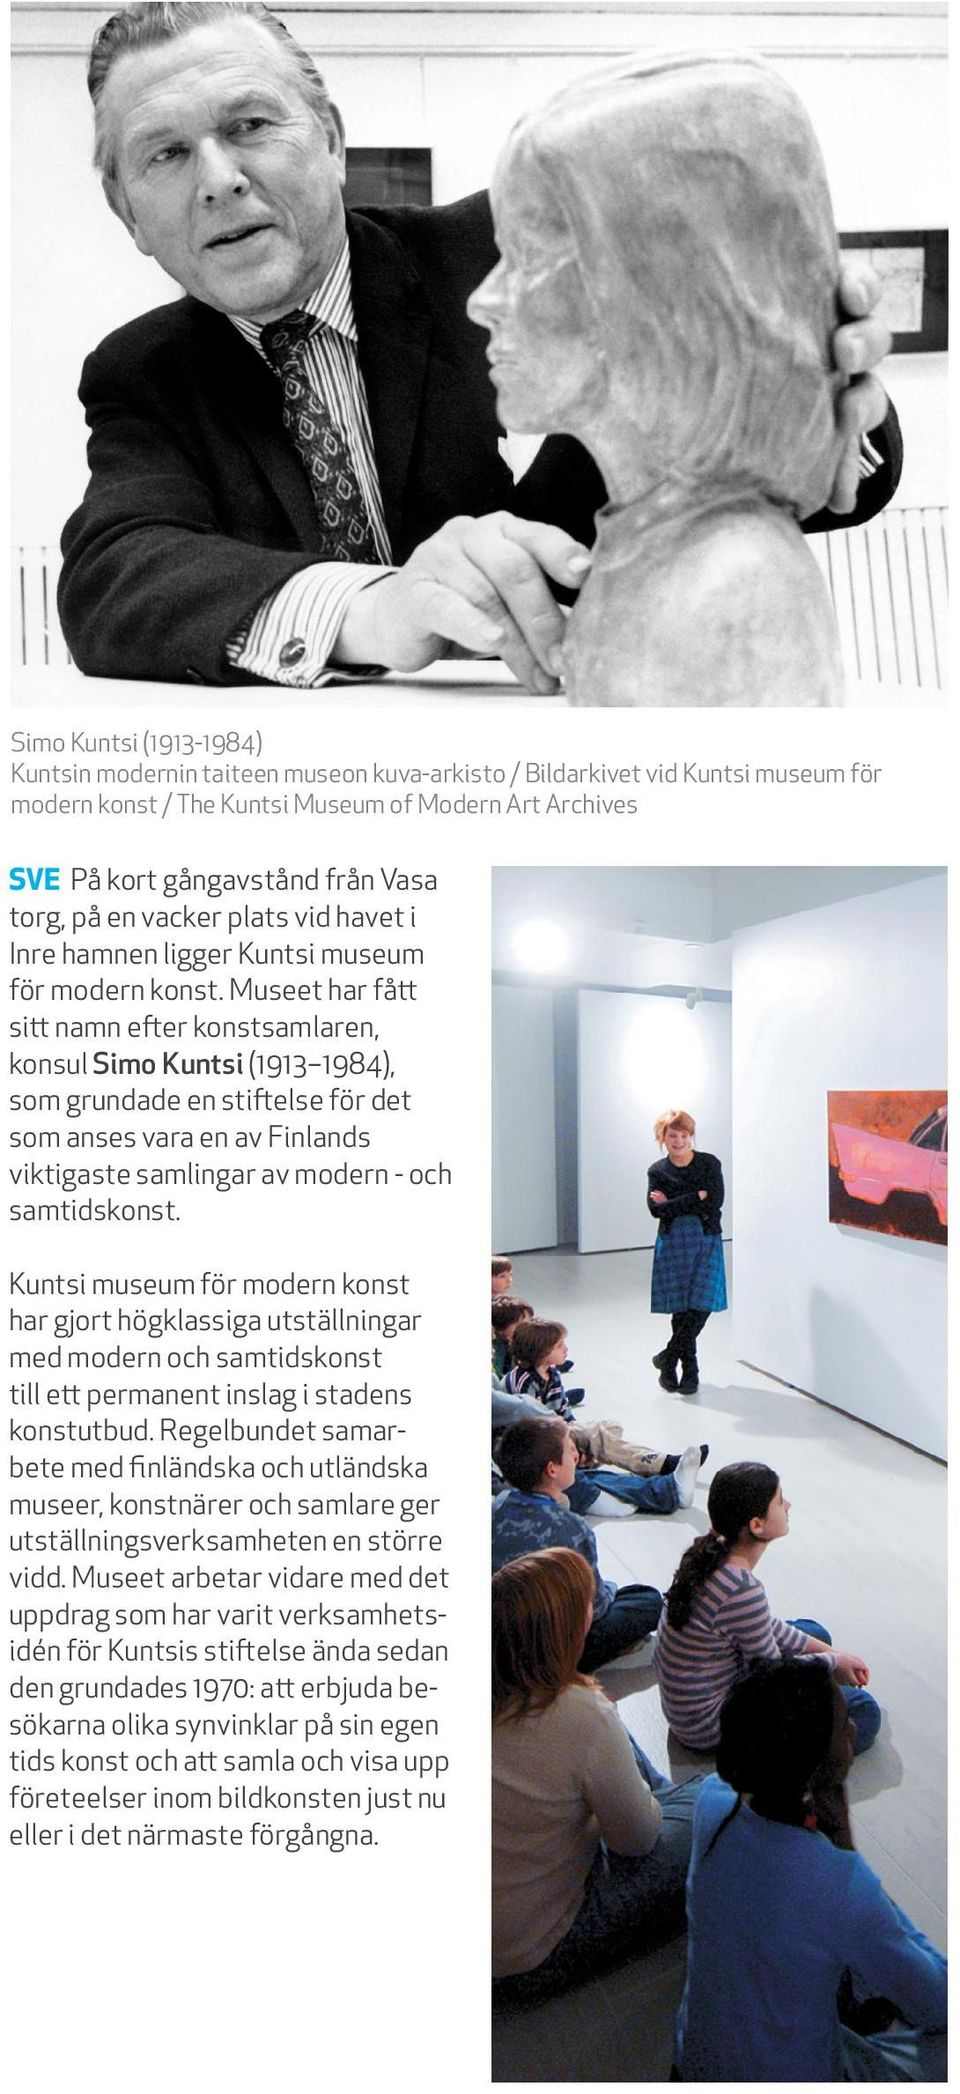 Museet har fått sitt namn efter konstsamlaren, konsul Simo Kuntsi (1913 1984), som grundade en stiftelse för det som anses vara en av Finlands viktigaste samlingar av modern - och samtidskonst.